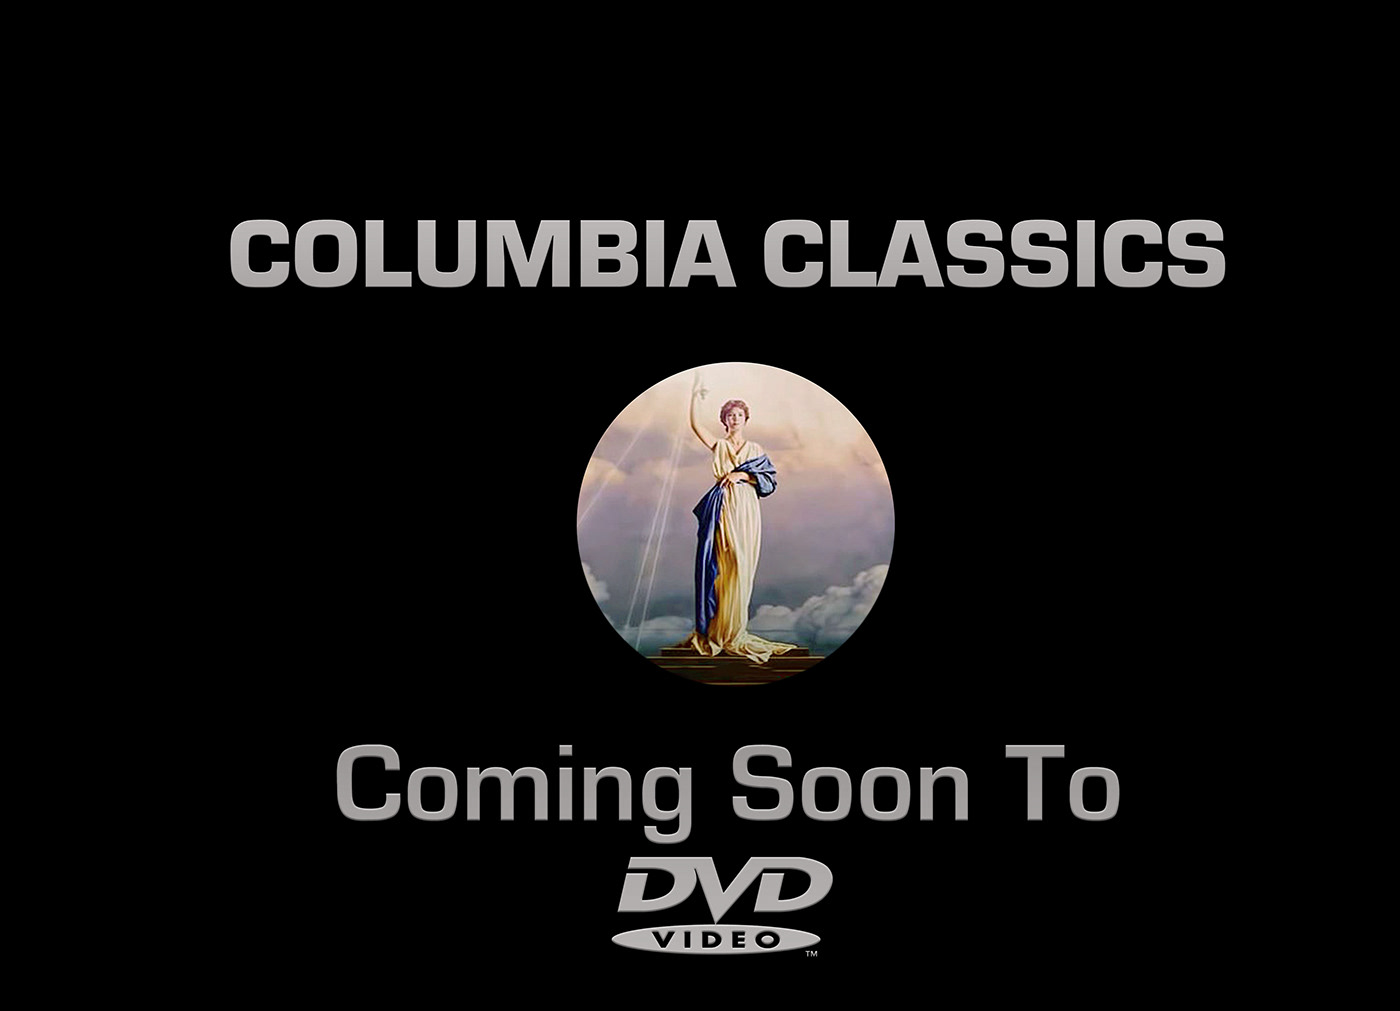 Columbia Classics bumpers